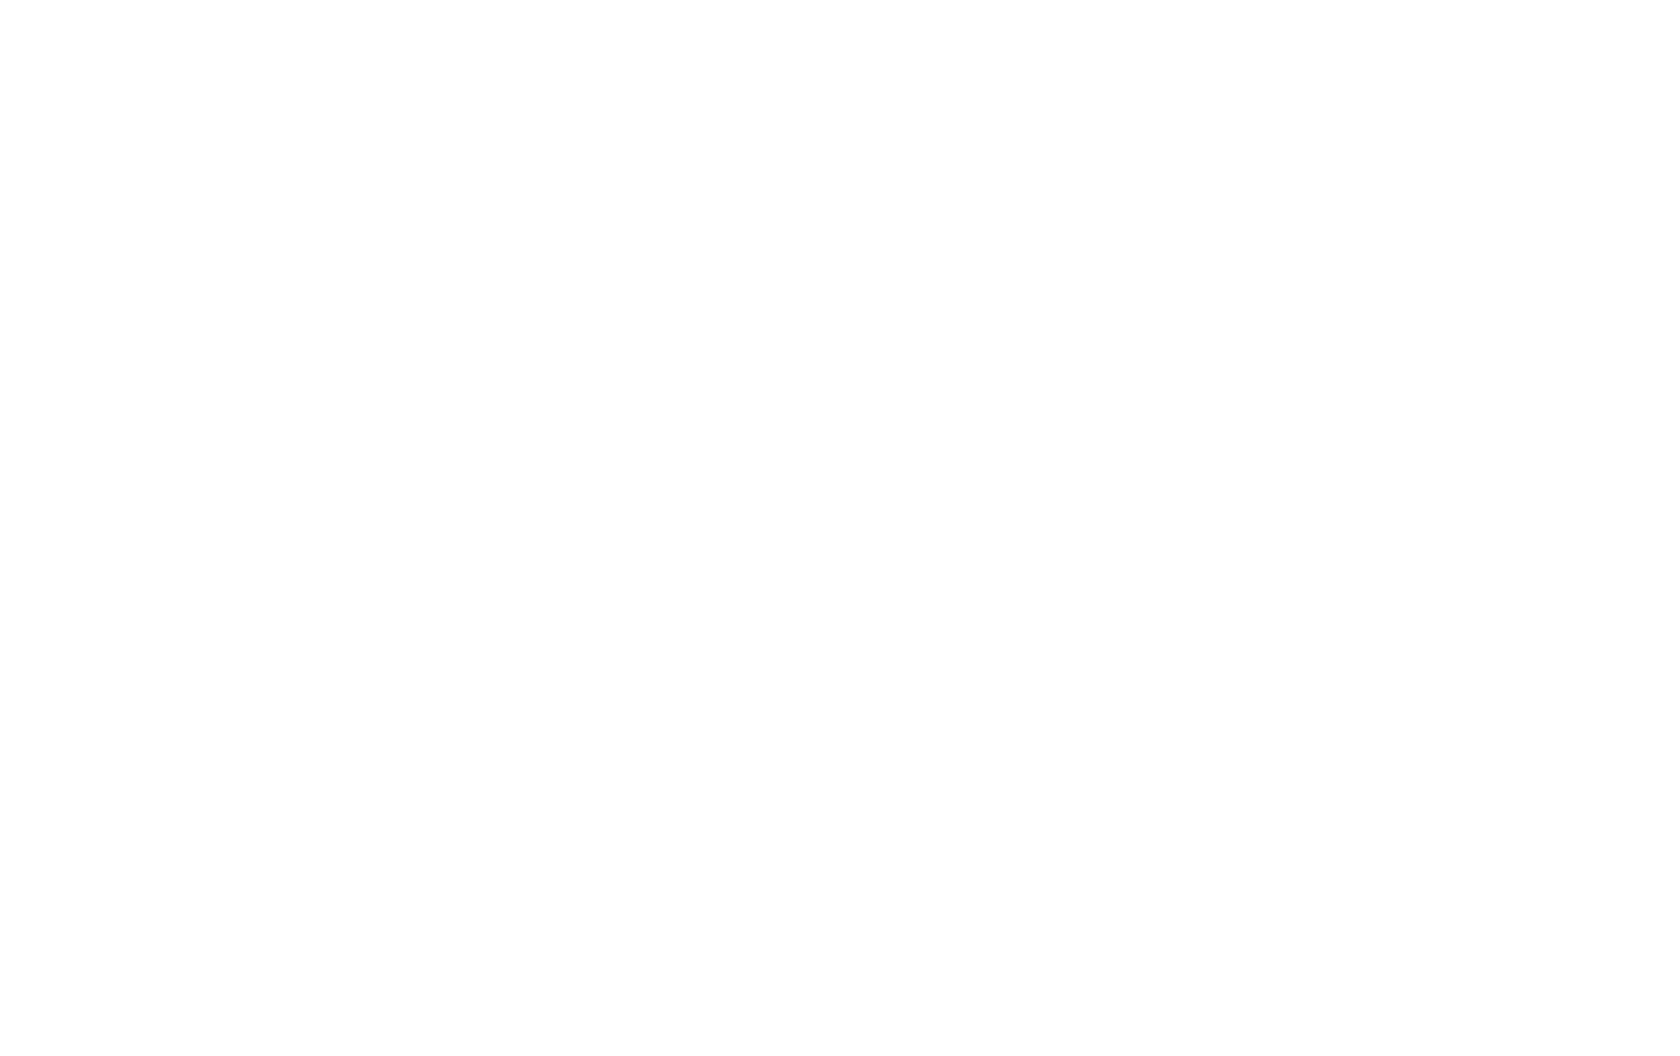 Торцевая заглушка Flexy TOREC LINE 50 для профилей Flexy: размер, вид, применение, способ монтажа в Беларуси (РБ)